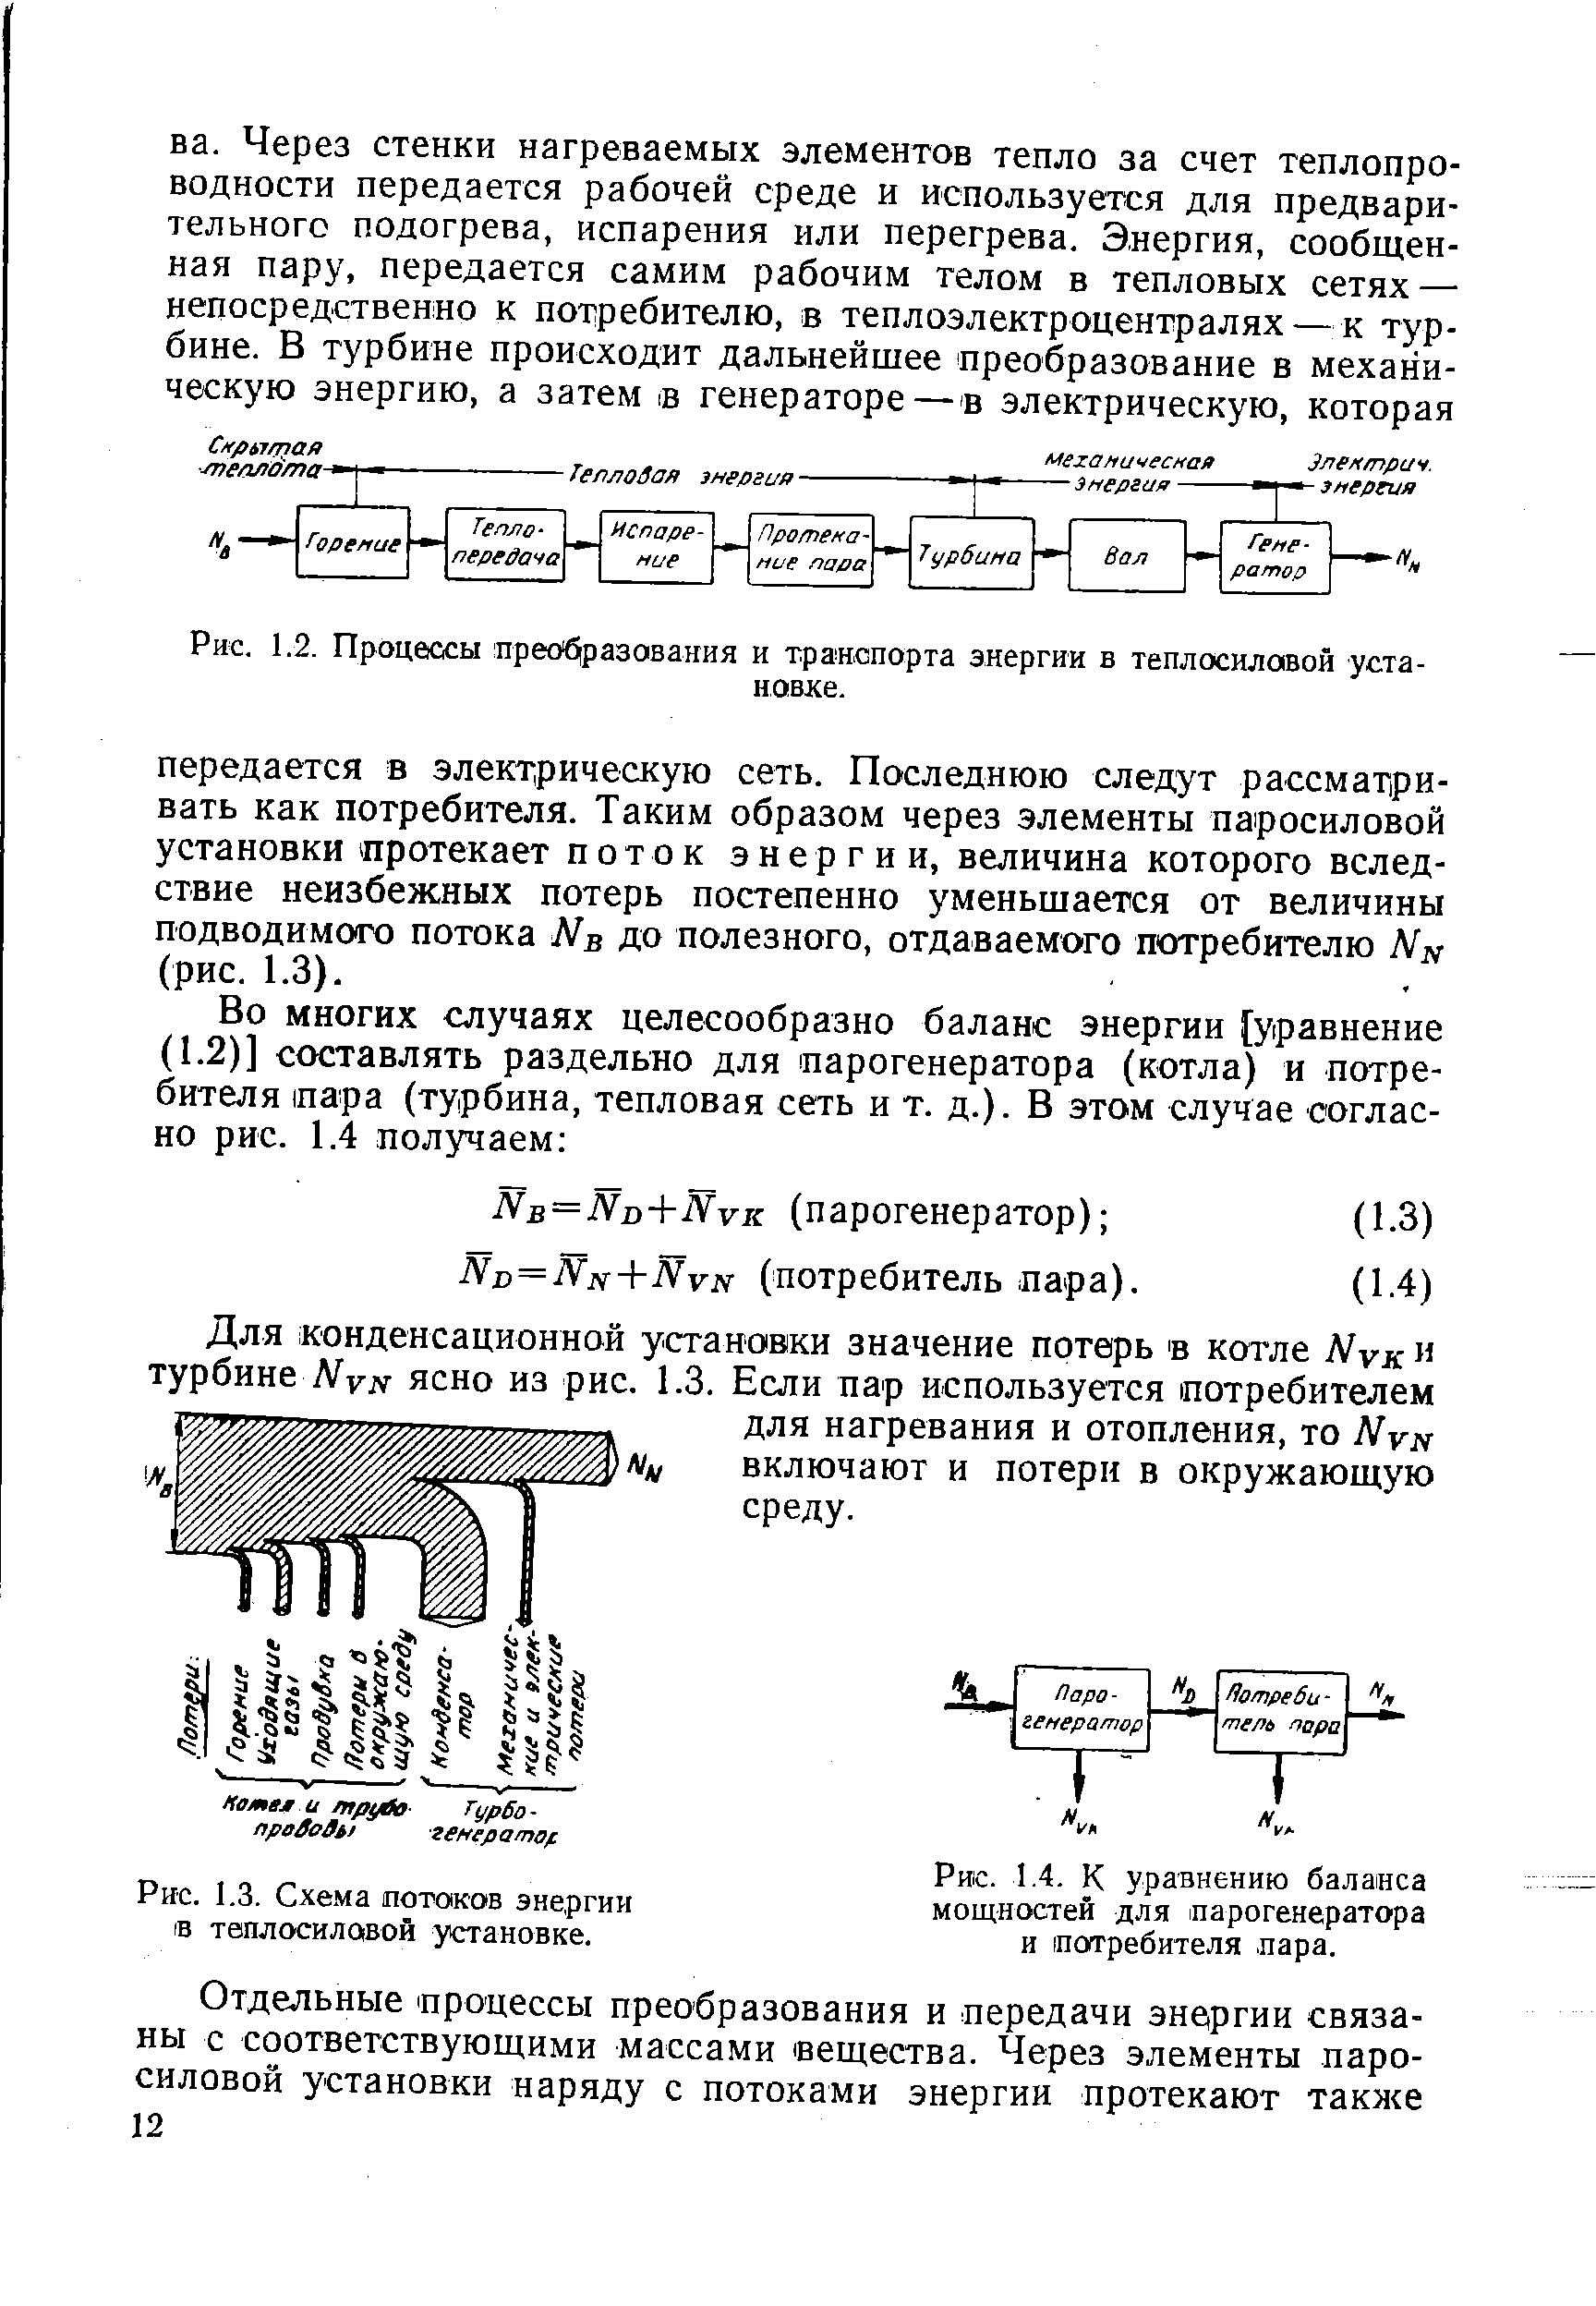 Рис. 1.3. Схе.ма <a href="/info/19469">потоков энергии</a> IB теплосиловой установке.
